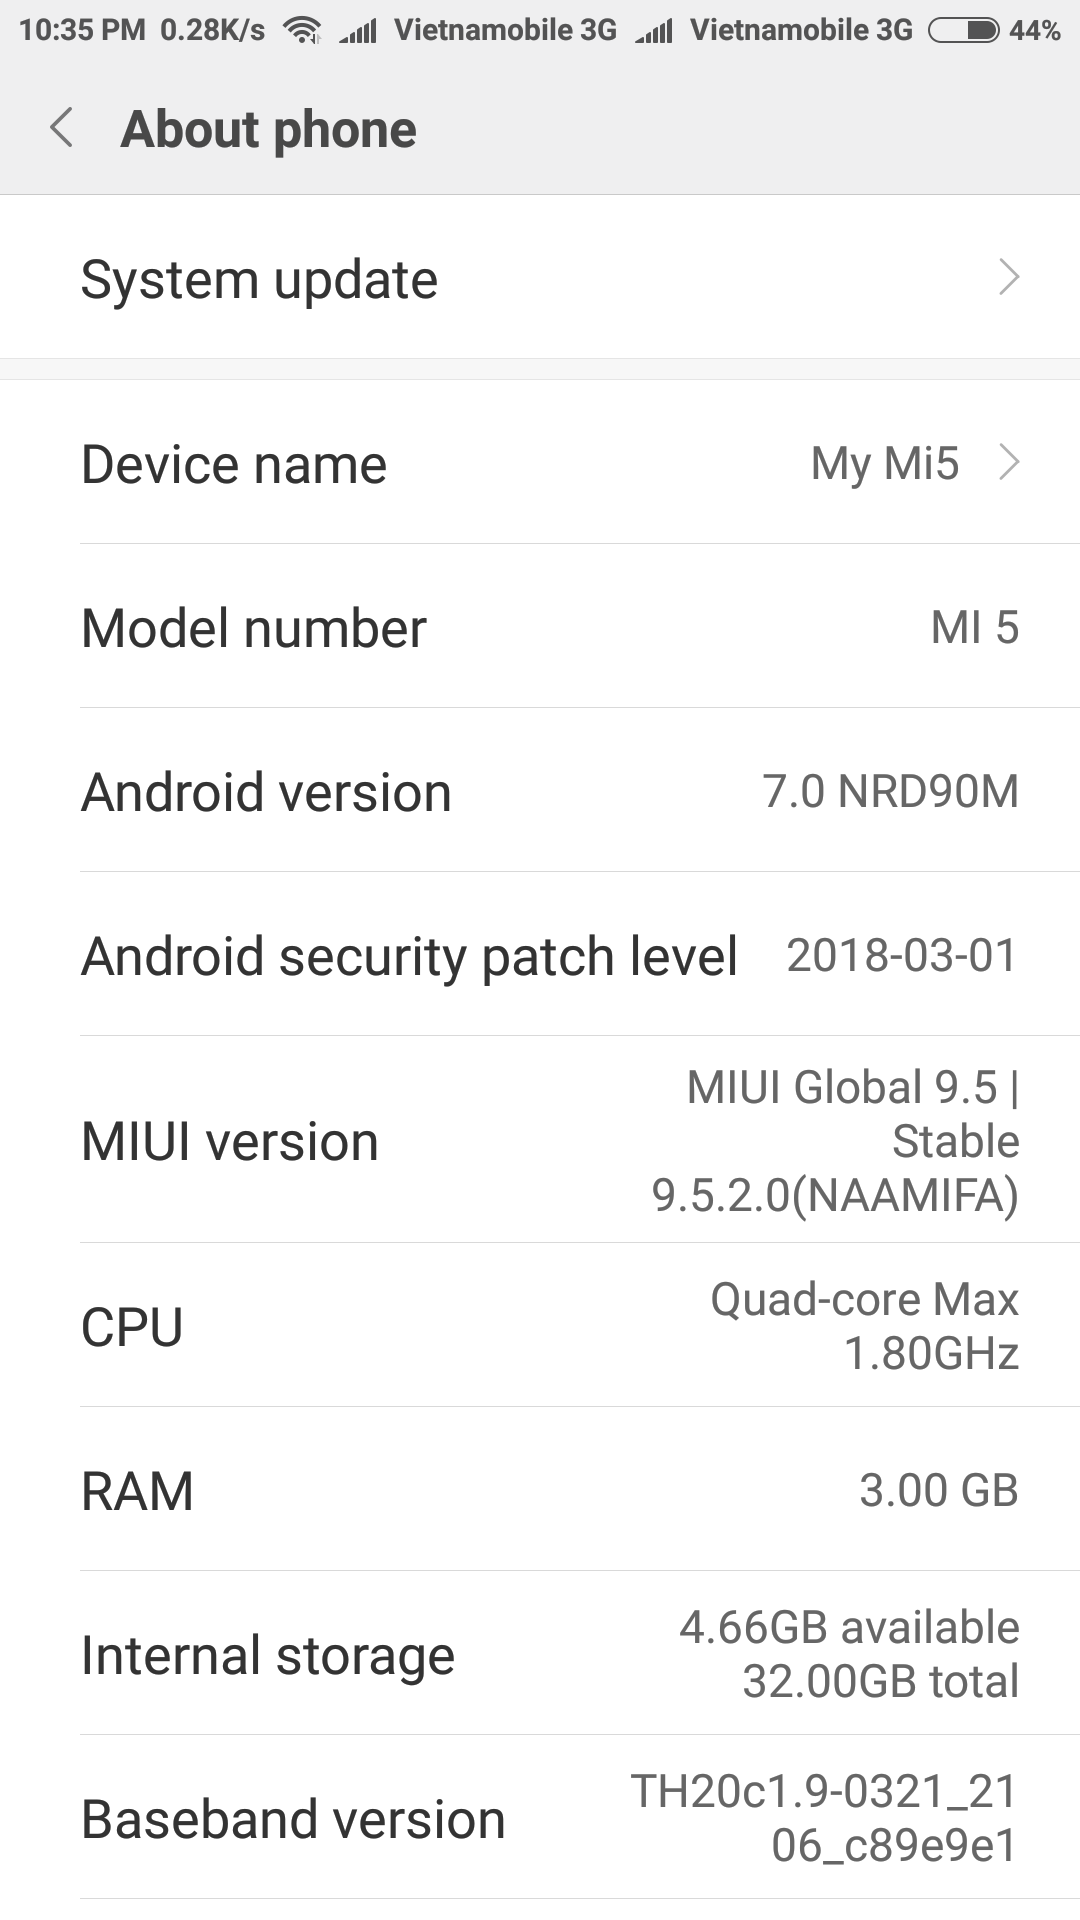 Hôm nay mình vừa update con Mi5 lên MiUI 9.5 nhưng buồn 1 chuyện là em nó chưa ăn được Oreo